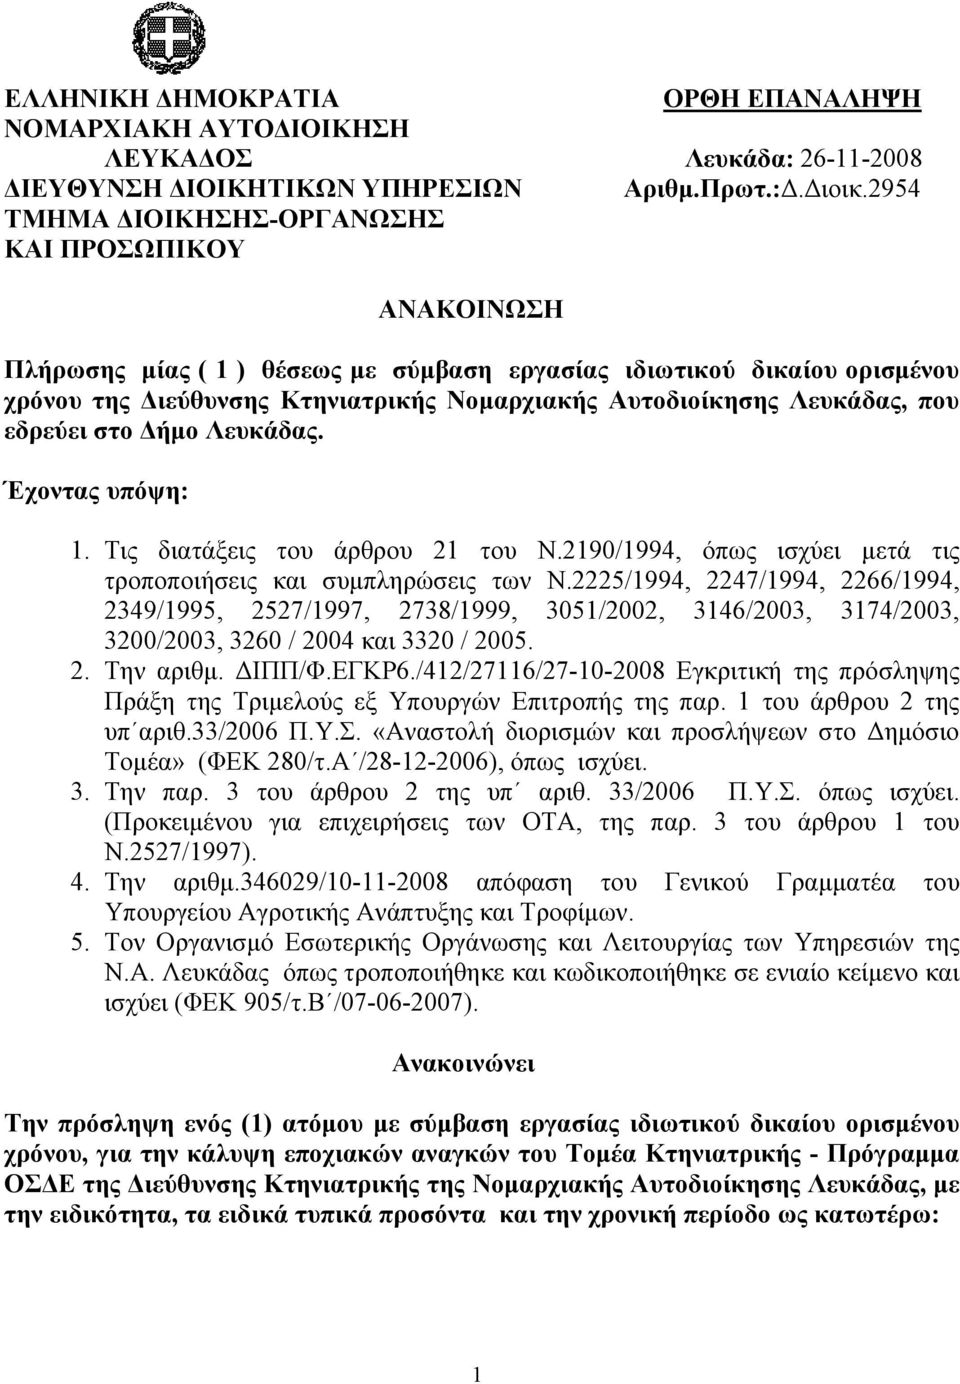 Λευκάδας, που εδρεύει στο Δήμο Λευκάδας. Έχοντας υπόψη: 1. Tις διατάξεις του άρθρου 21 του Ν.2190/1994, όπως ισχύει μετά τις τροποποιήσεις και συμπληρώσεις των Ν.